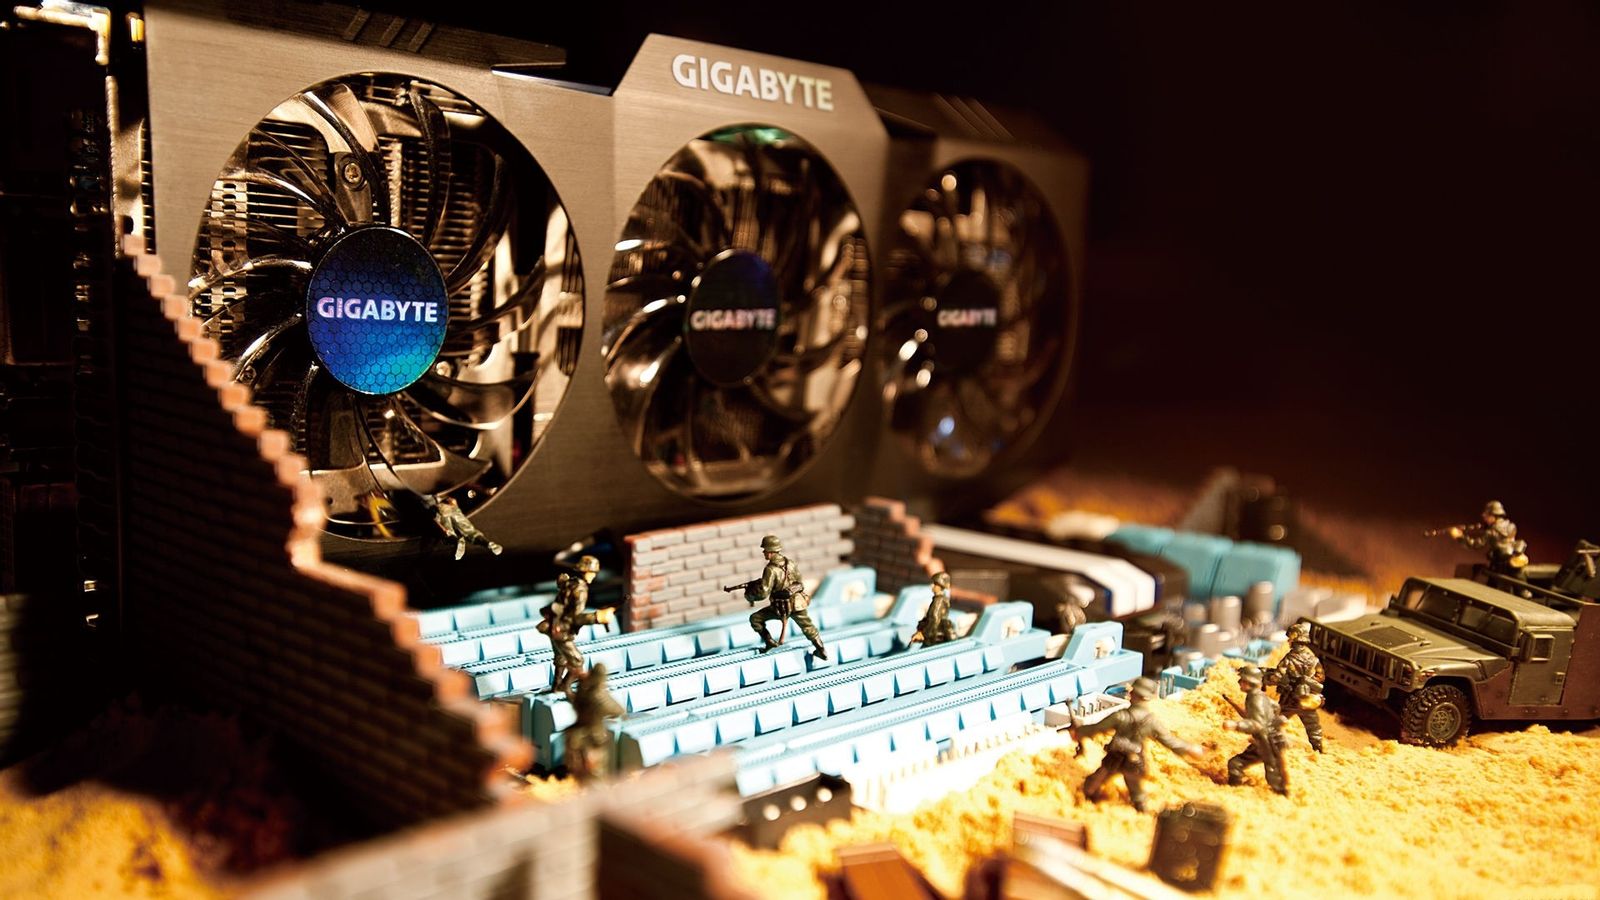 Картинка в компьютере 4. Gigabyte Technology ПК. Компьютер motherboard Gigabyte. Компьютерное железо.